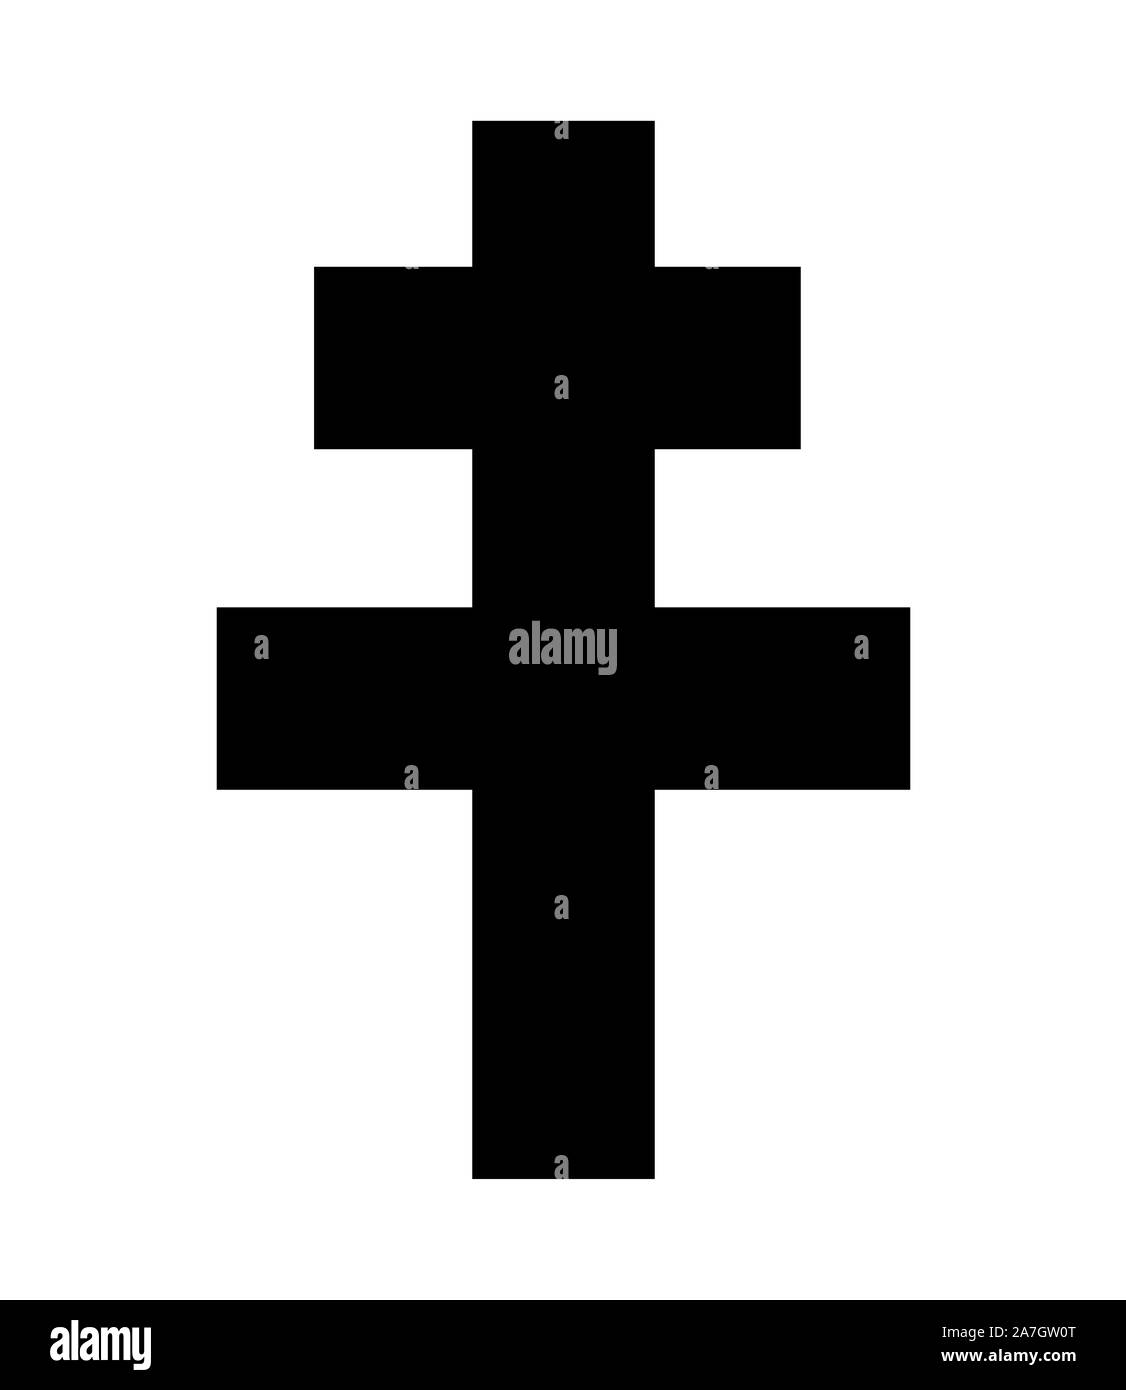 Cross of Lorraine symbol Stock Photo